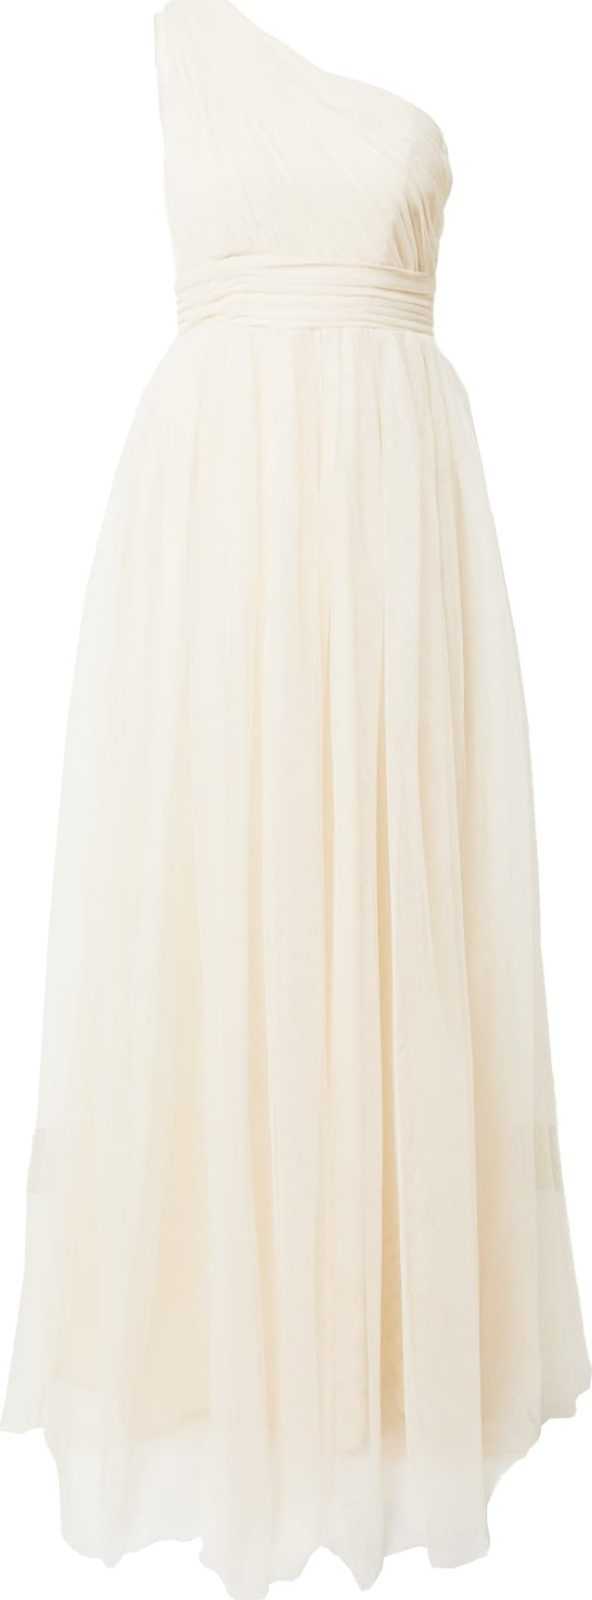 Skirt & Stiletto Společenské šaty 'GIANNA' slonová kost